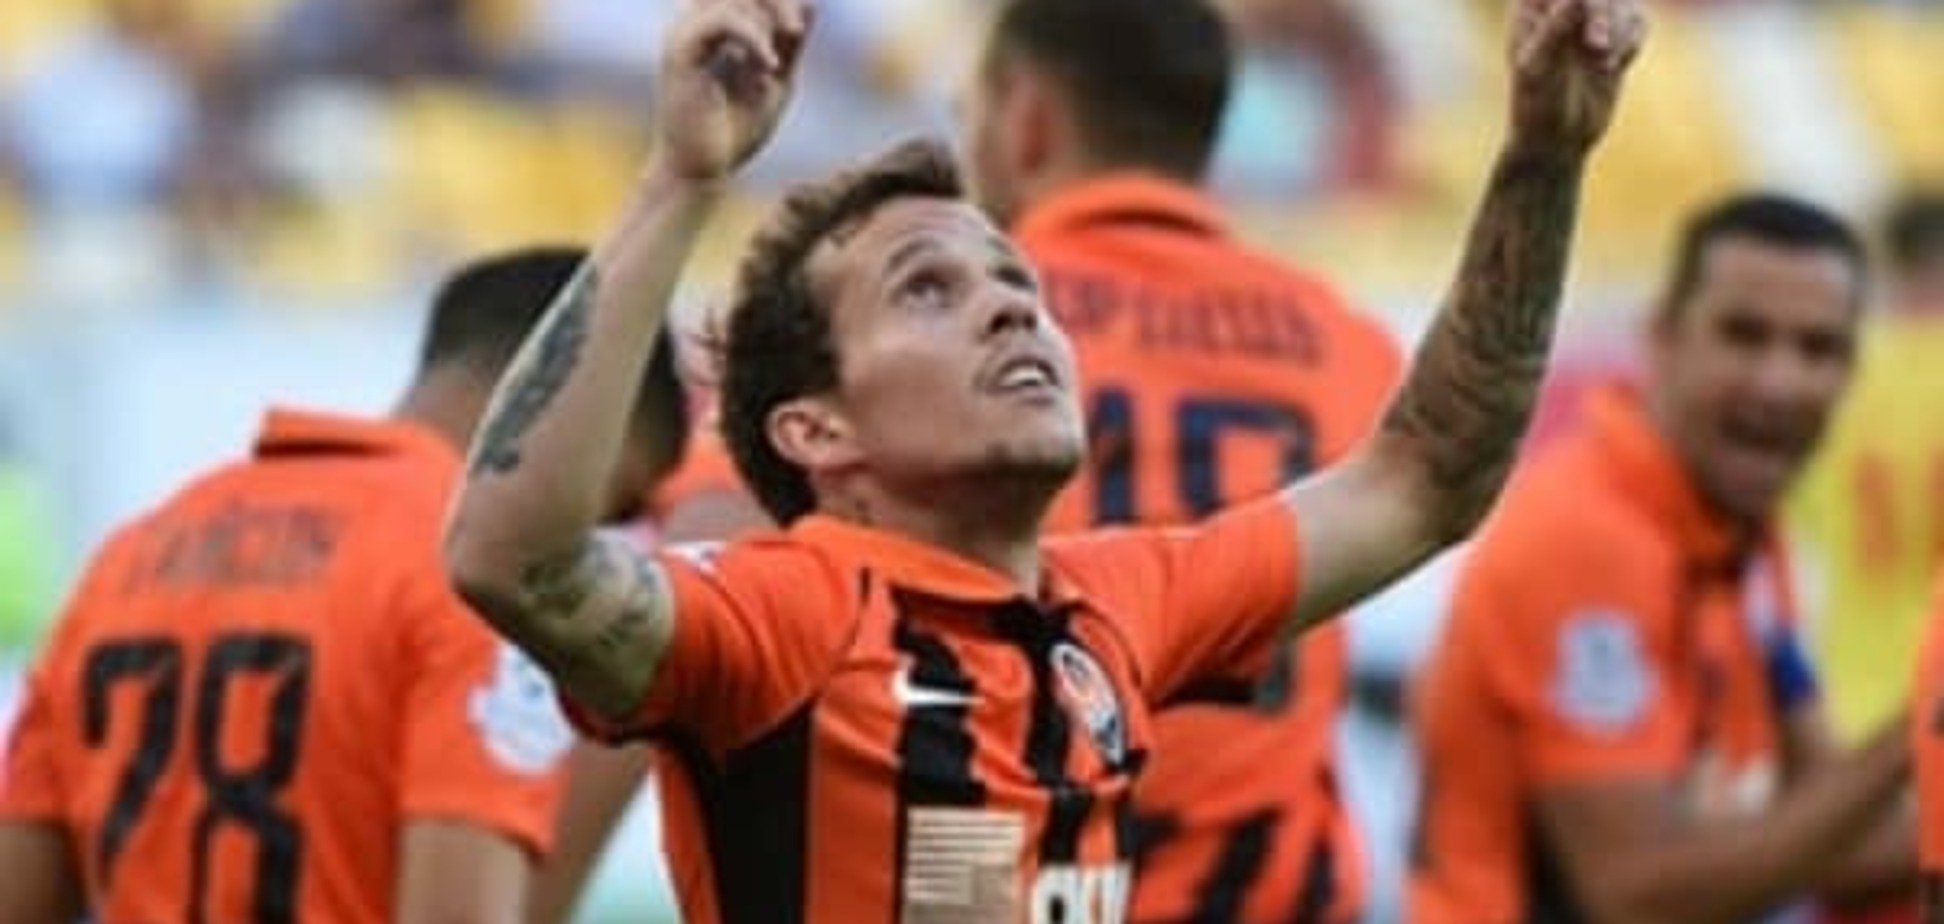 Бразильський футболіст після переходу до англійського клубу згадав про окупований Росією Донецьк